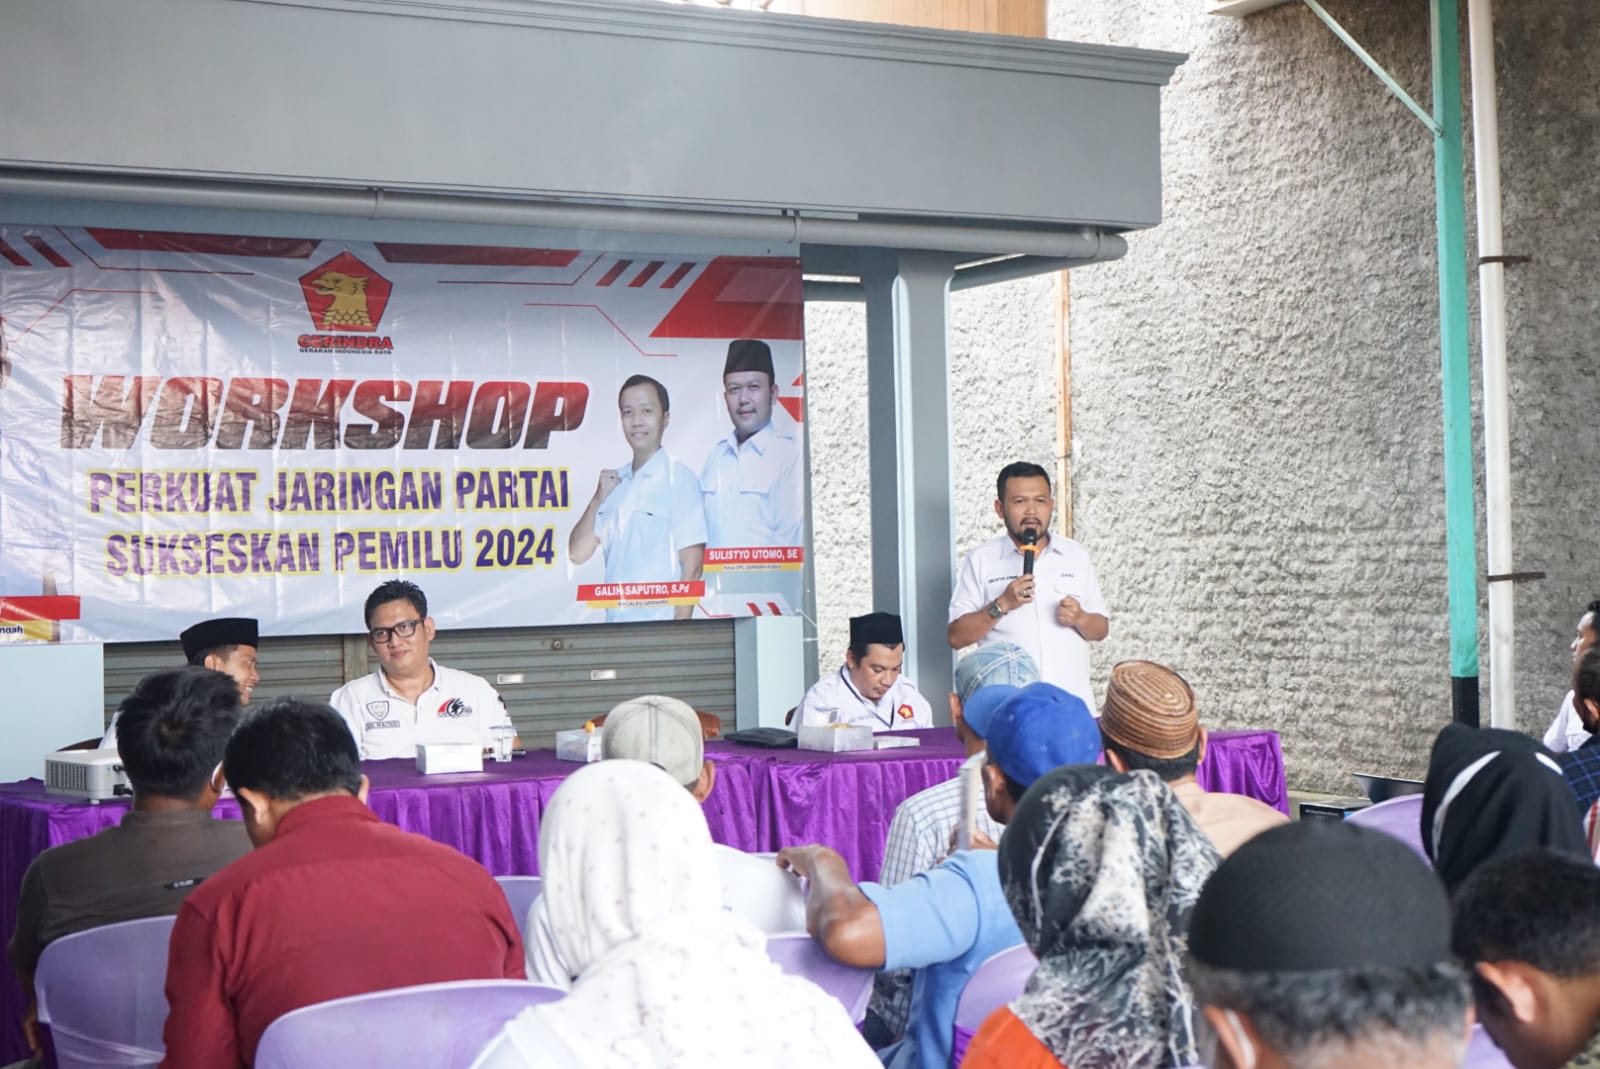 ISTIMEWA / LINGKAR JATENG SINERGI: DPC Partai Gerindra Kudus adakan workshop Perkuat Jaringan Partai Gerindra untuk Sukseskan Pemilu 2024, Minggu (12/12).